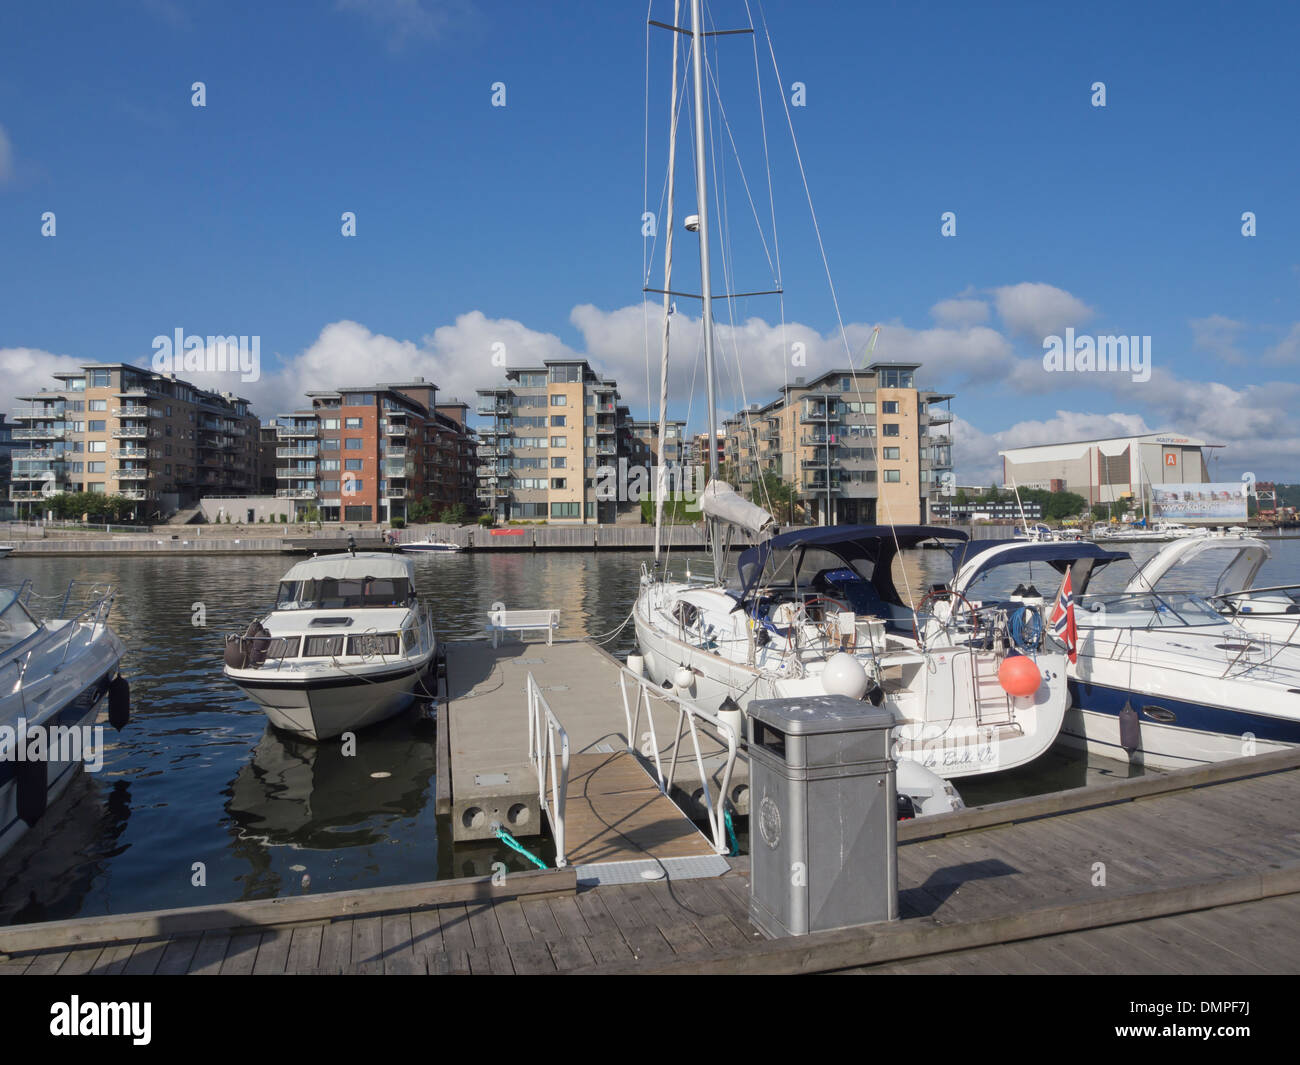 Bloques de pisos modernos y embarcaciones privadas de la ciudad de Tønsberg Noruega, un destino de vacaciones junto al mar en verano Foto de stock